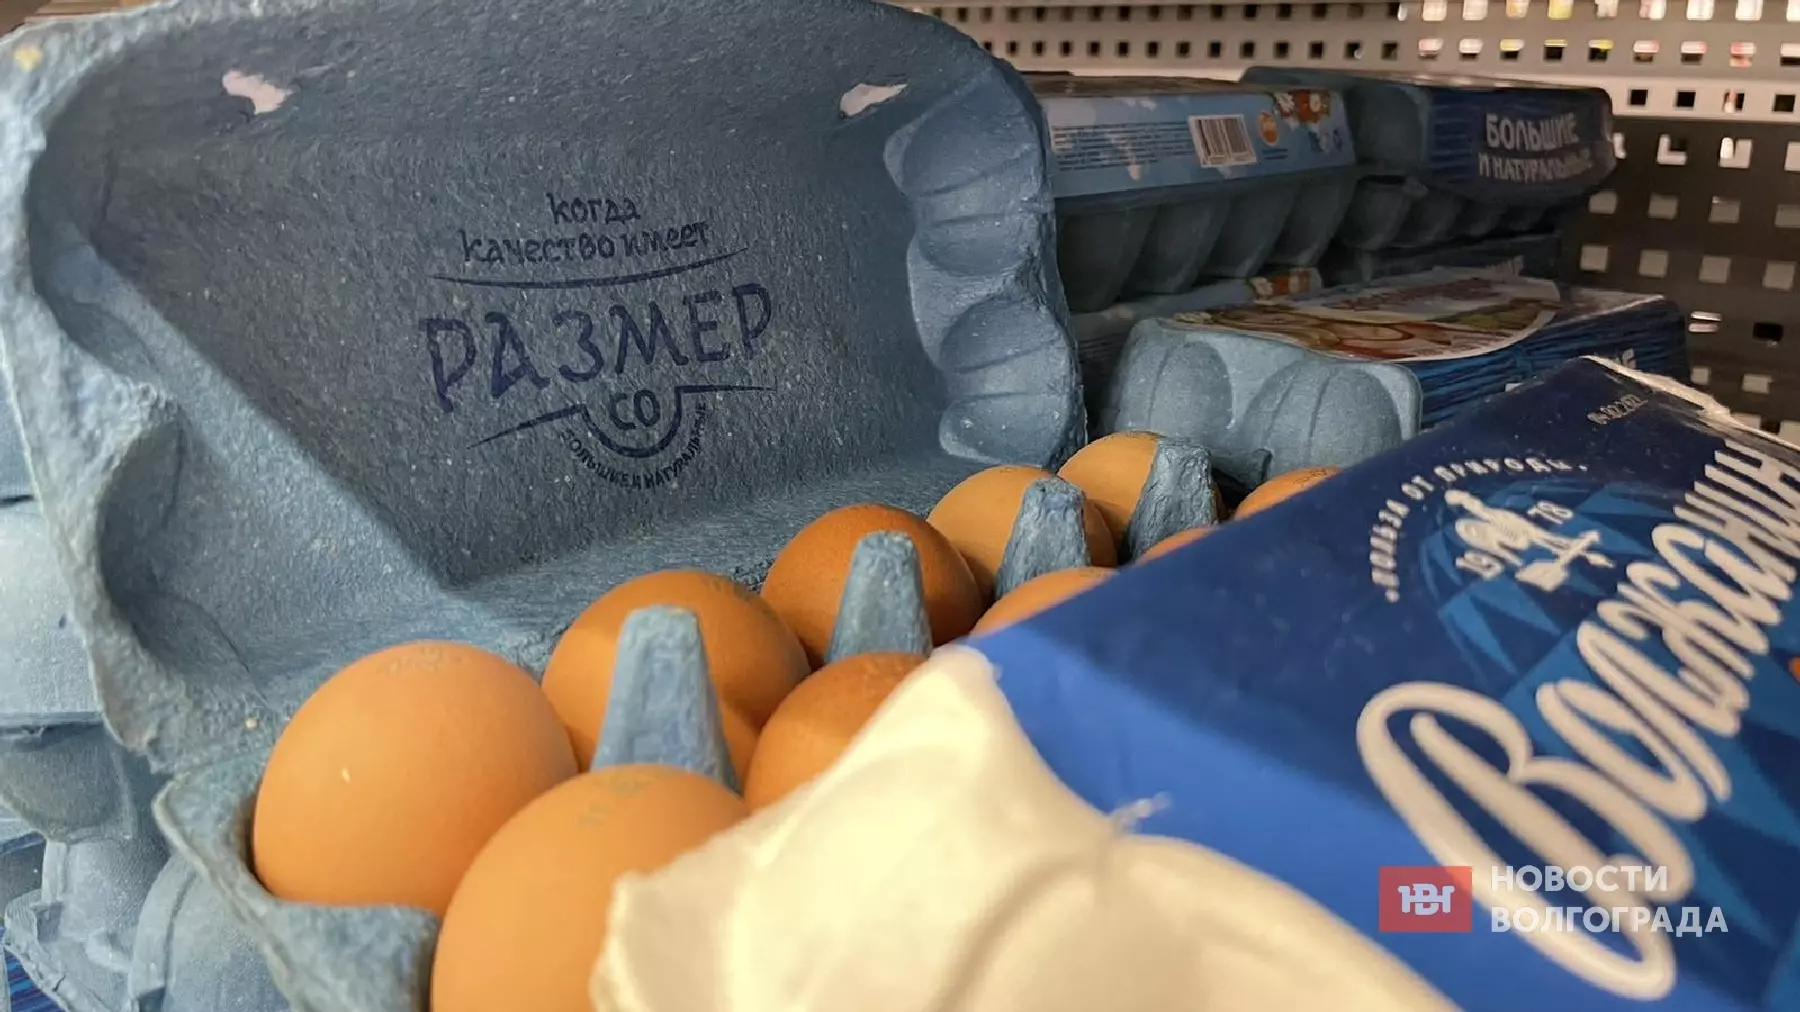 ФАС: волгоградские птицефабрики повышали цены на яйца на 100%